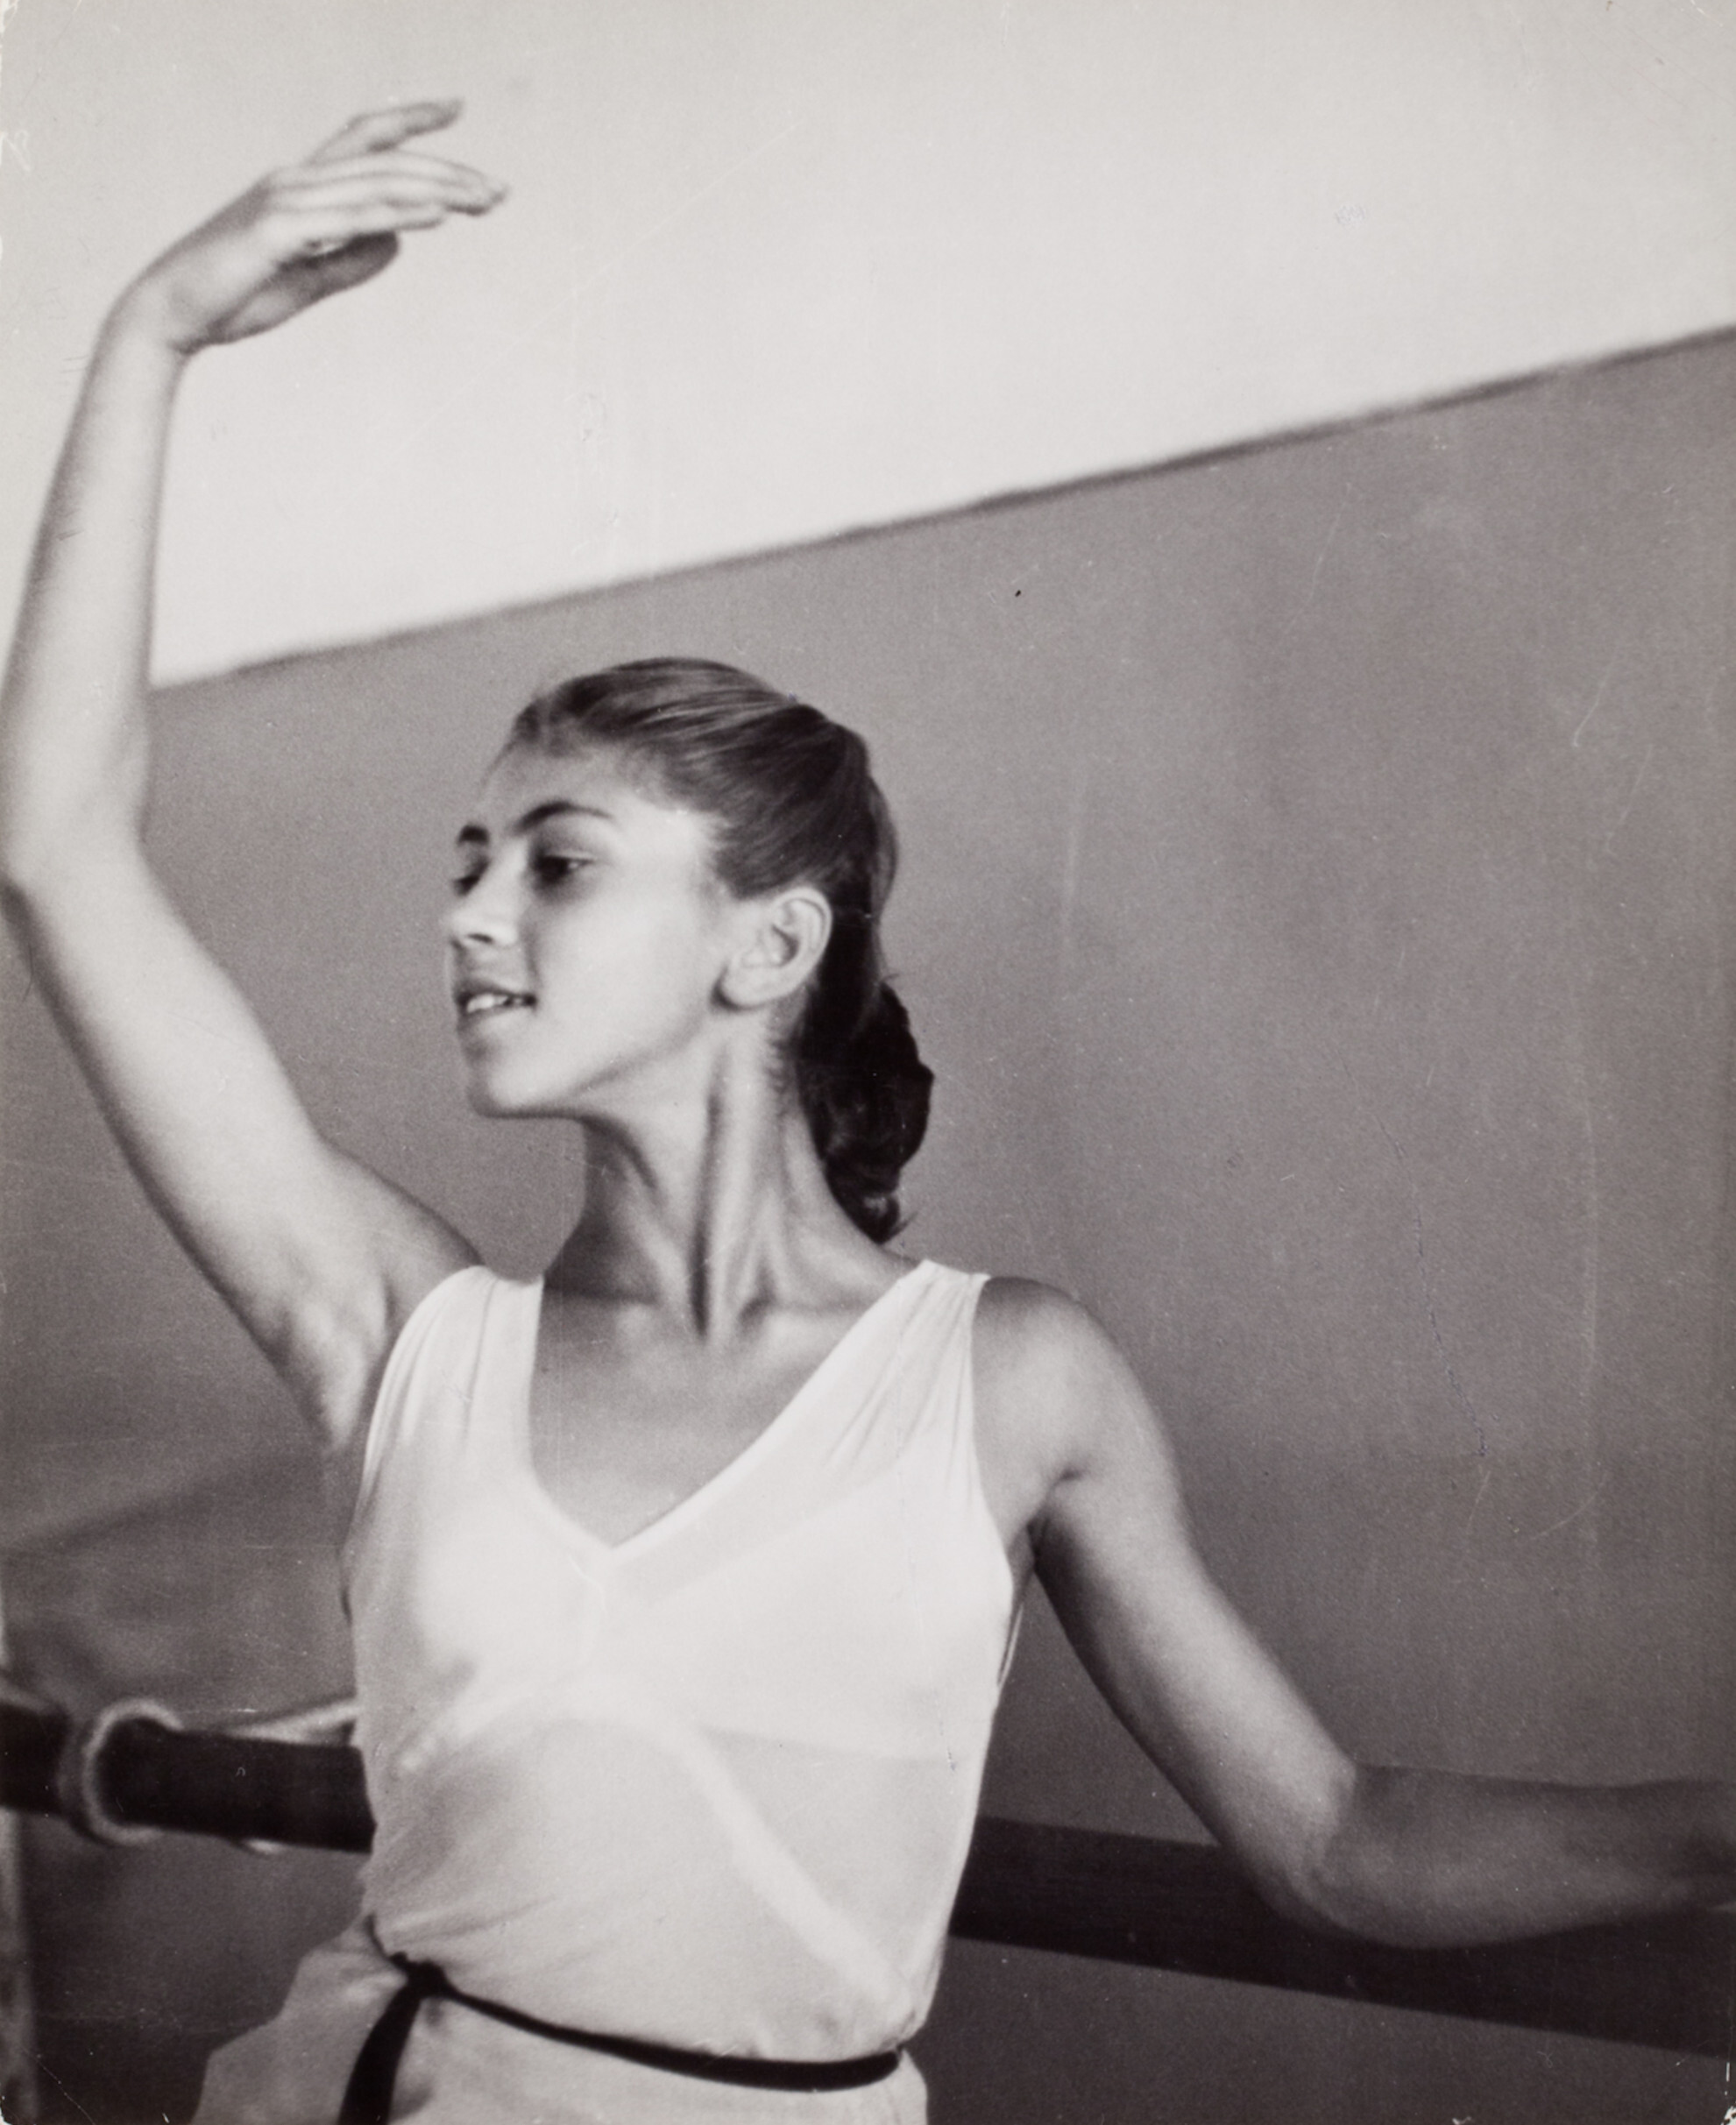 Балерина тренируется у станка, Москва, 1947 год. Фотограф Роберт Капа